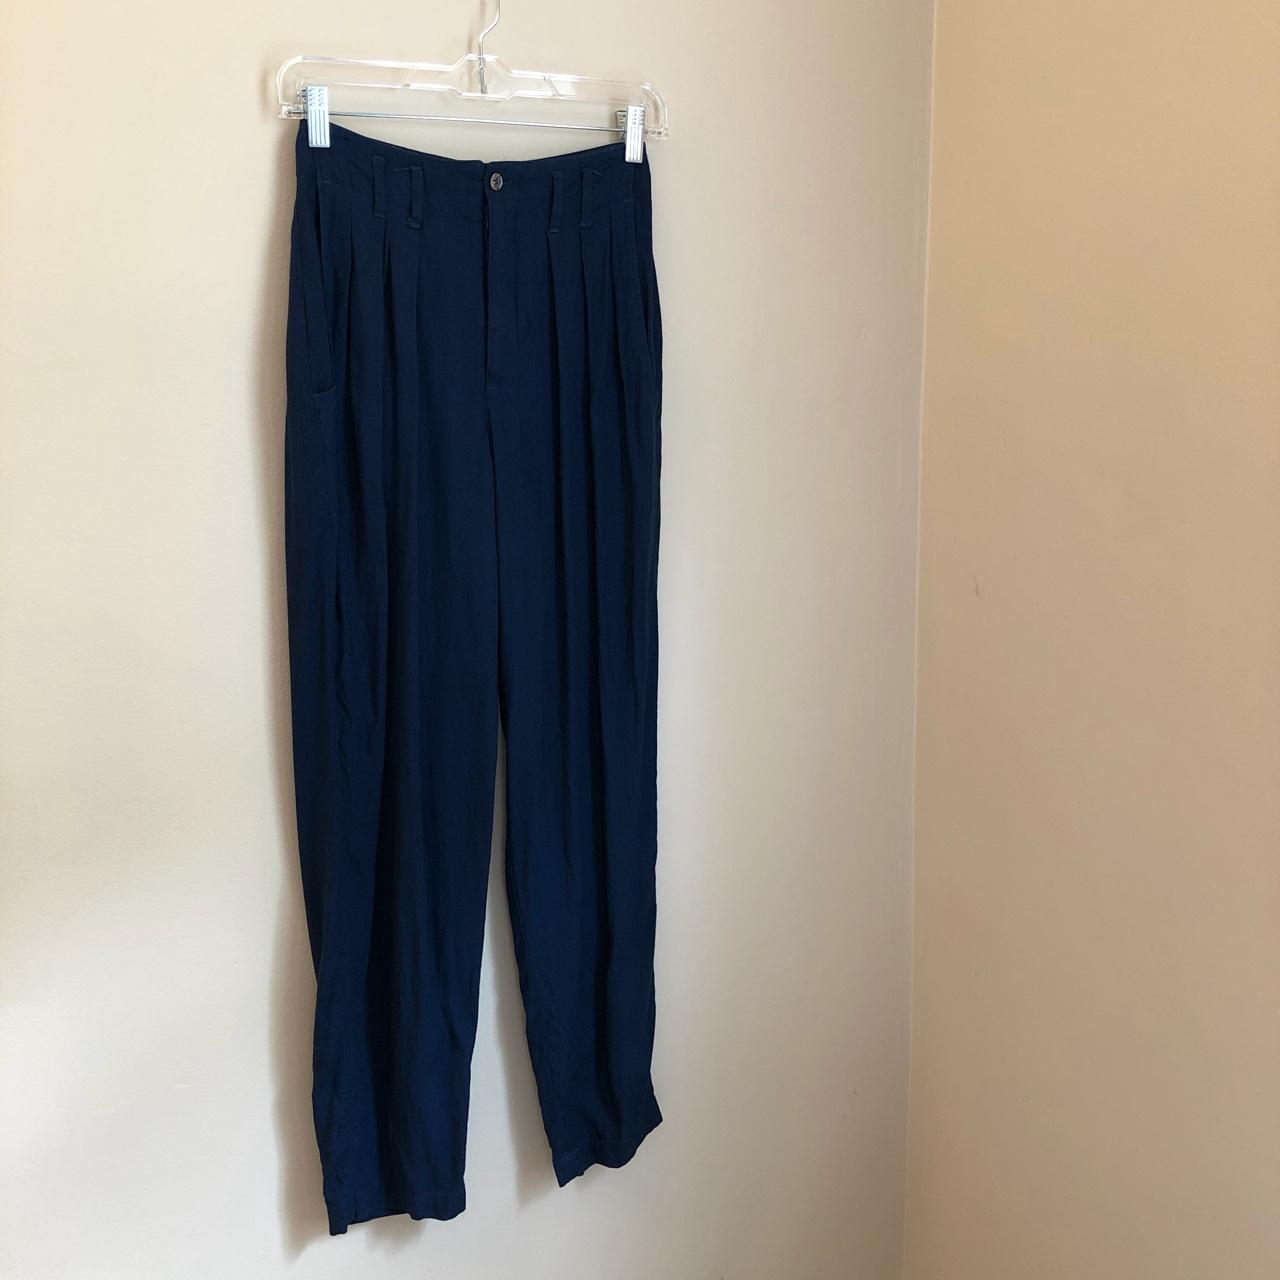 Gap Women's Blue Trousers | Depop